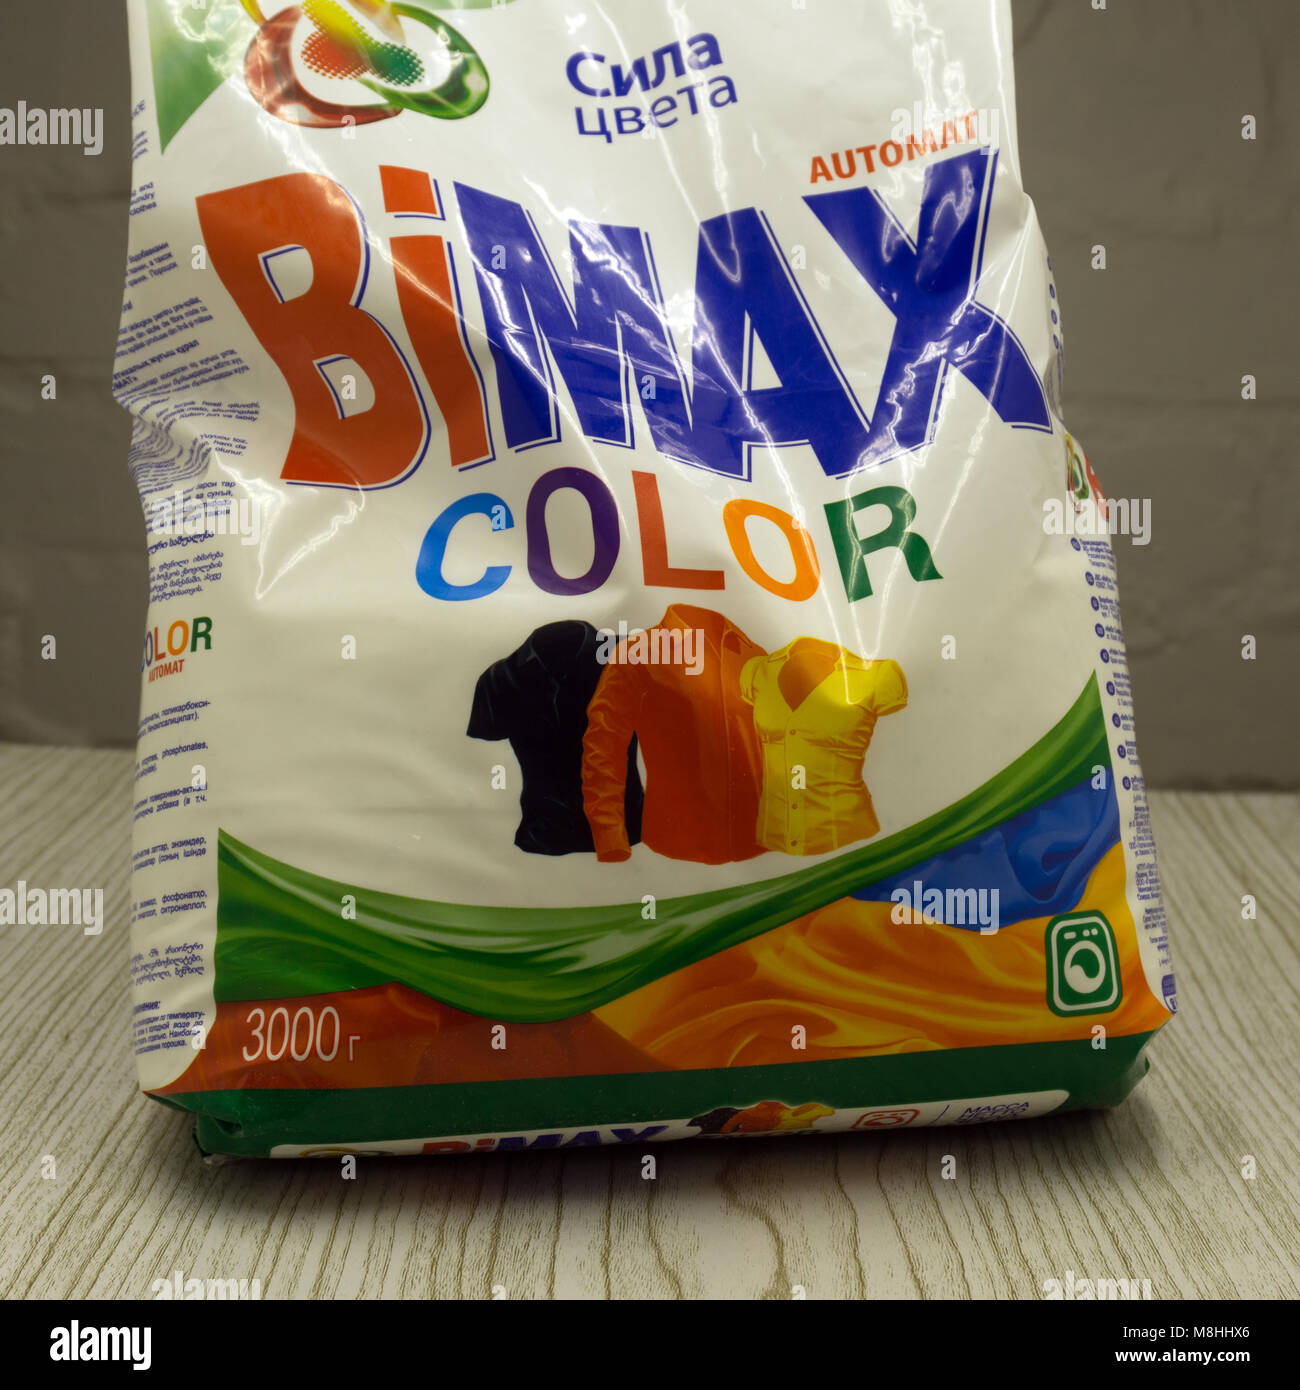 Bimax ist die Macht der Farbe, automatische auf Weiß. Diese Marke von Waschpulver das Original - Russland Berezniki vom 28. Januar 2017 gemacht hat. Stockfoto